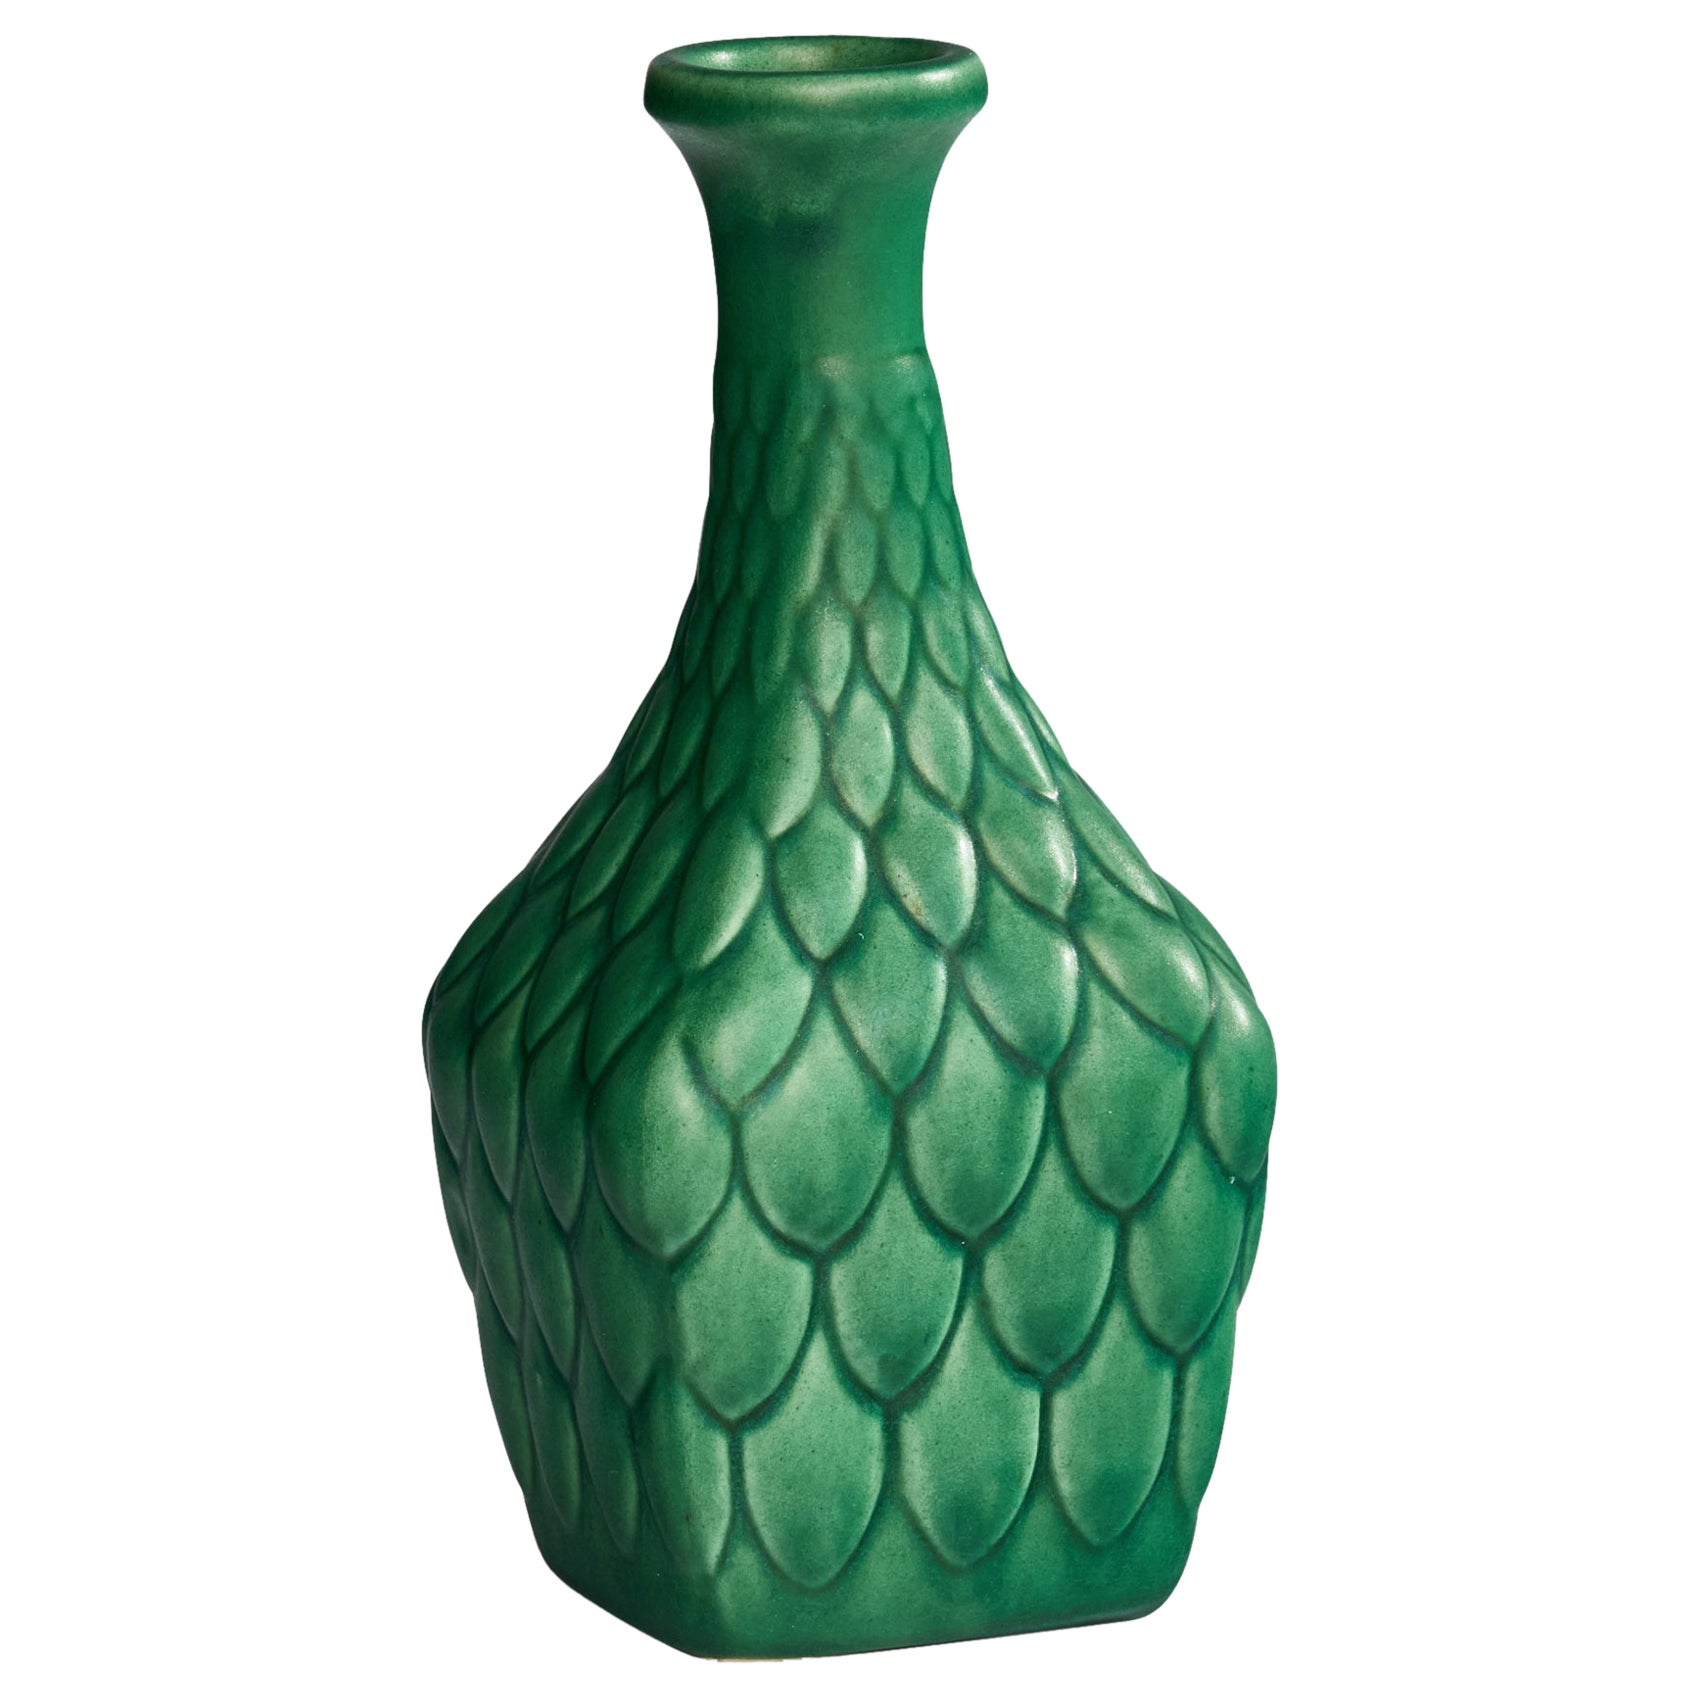 Syco Keramik, Vase, Ceramic, Sweden, 1930s